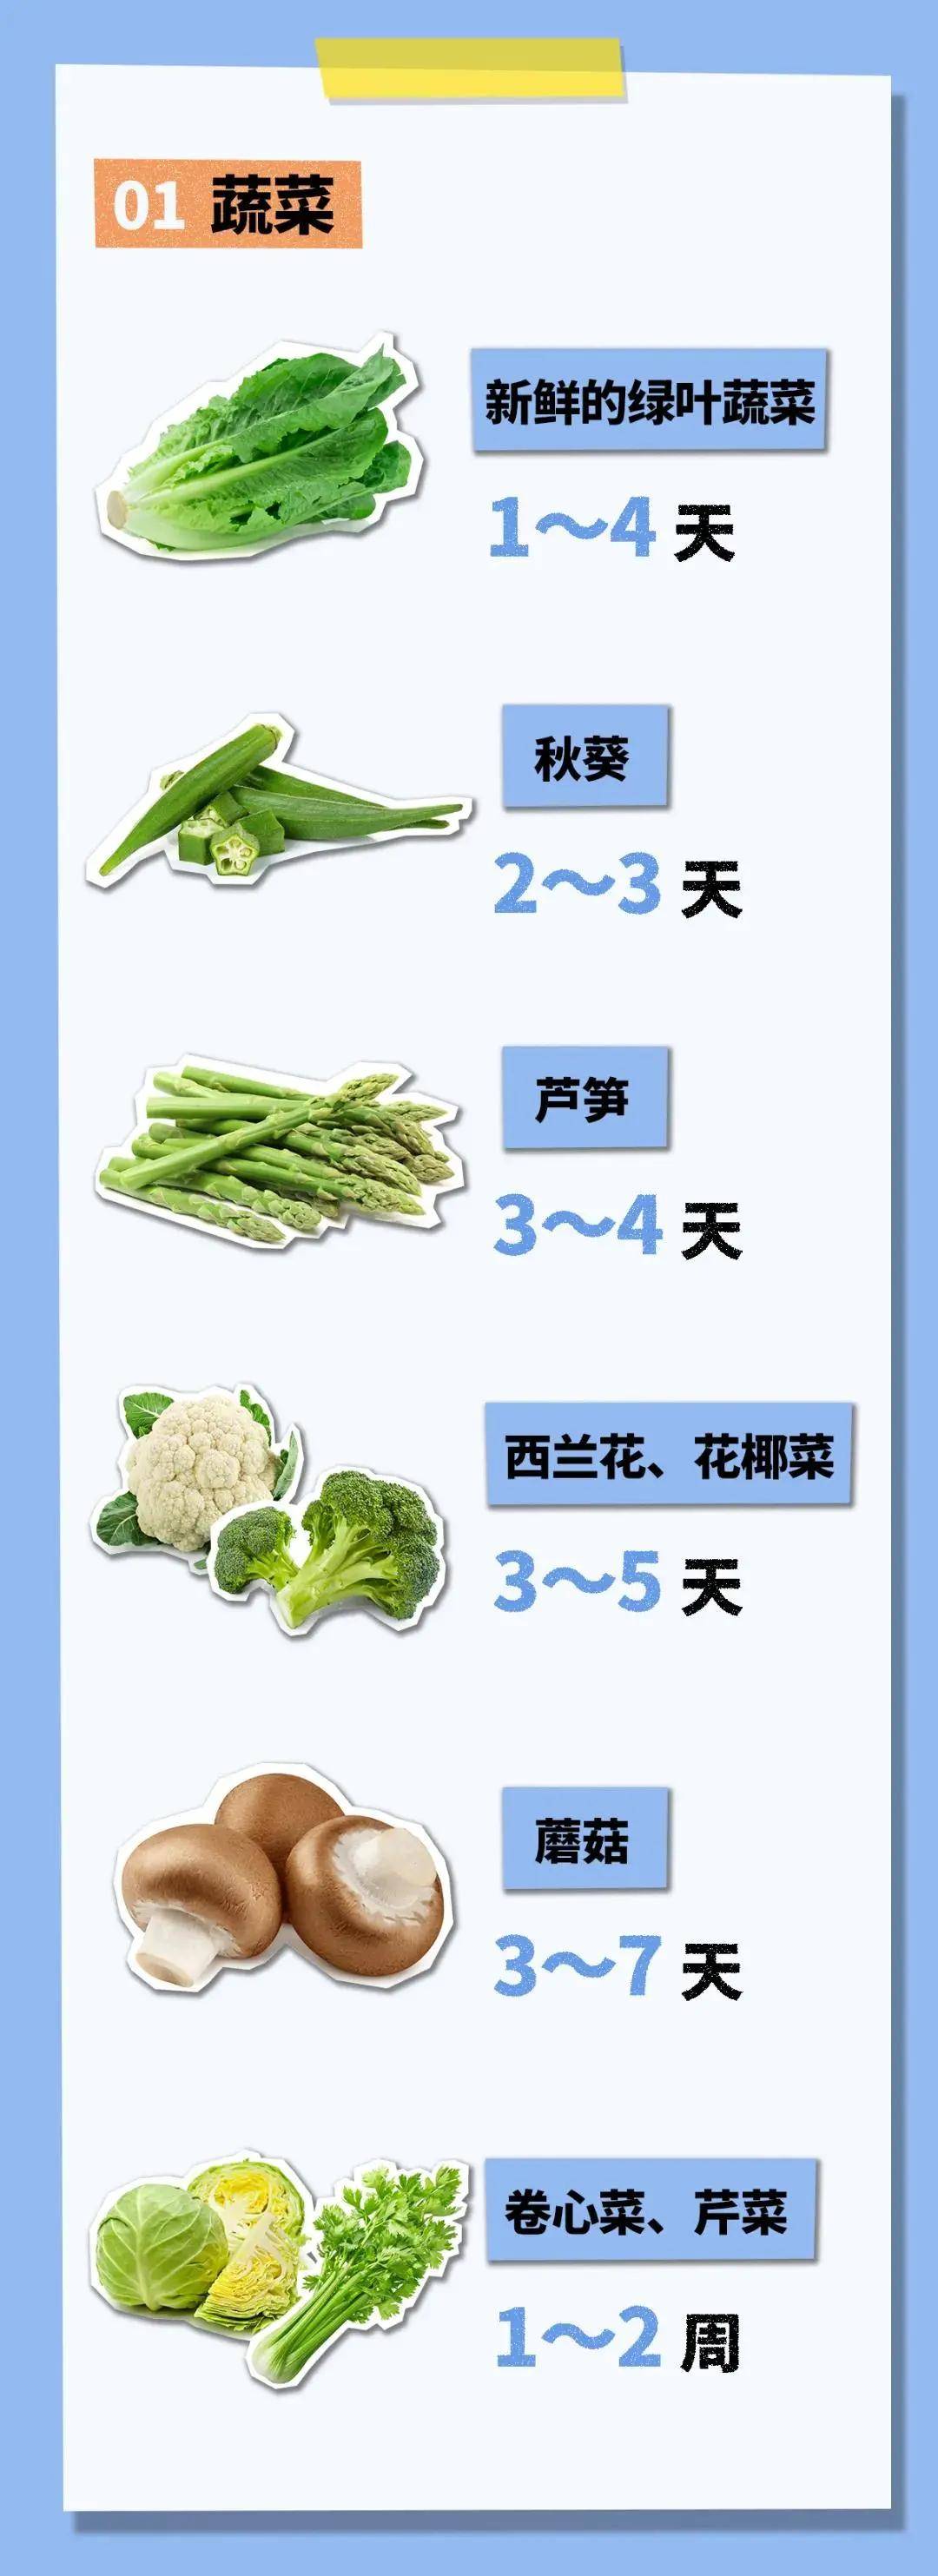 冰箱里的食物能放多久？绿叶菜4天、梨5天、低温牛奶7天